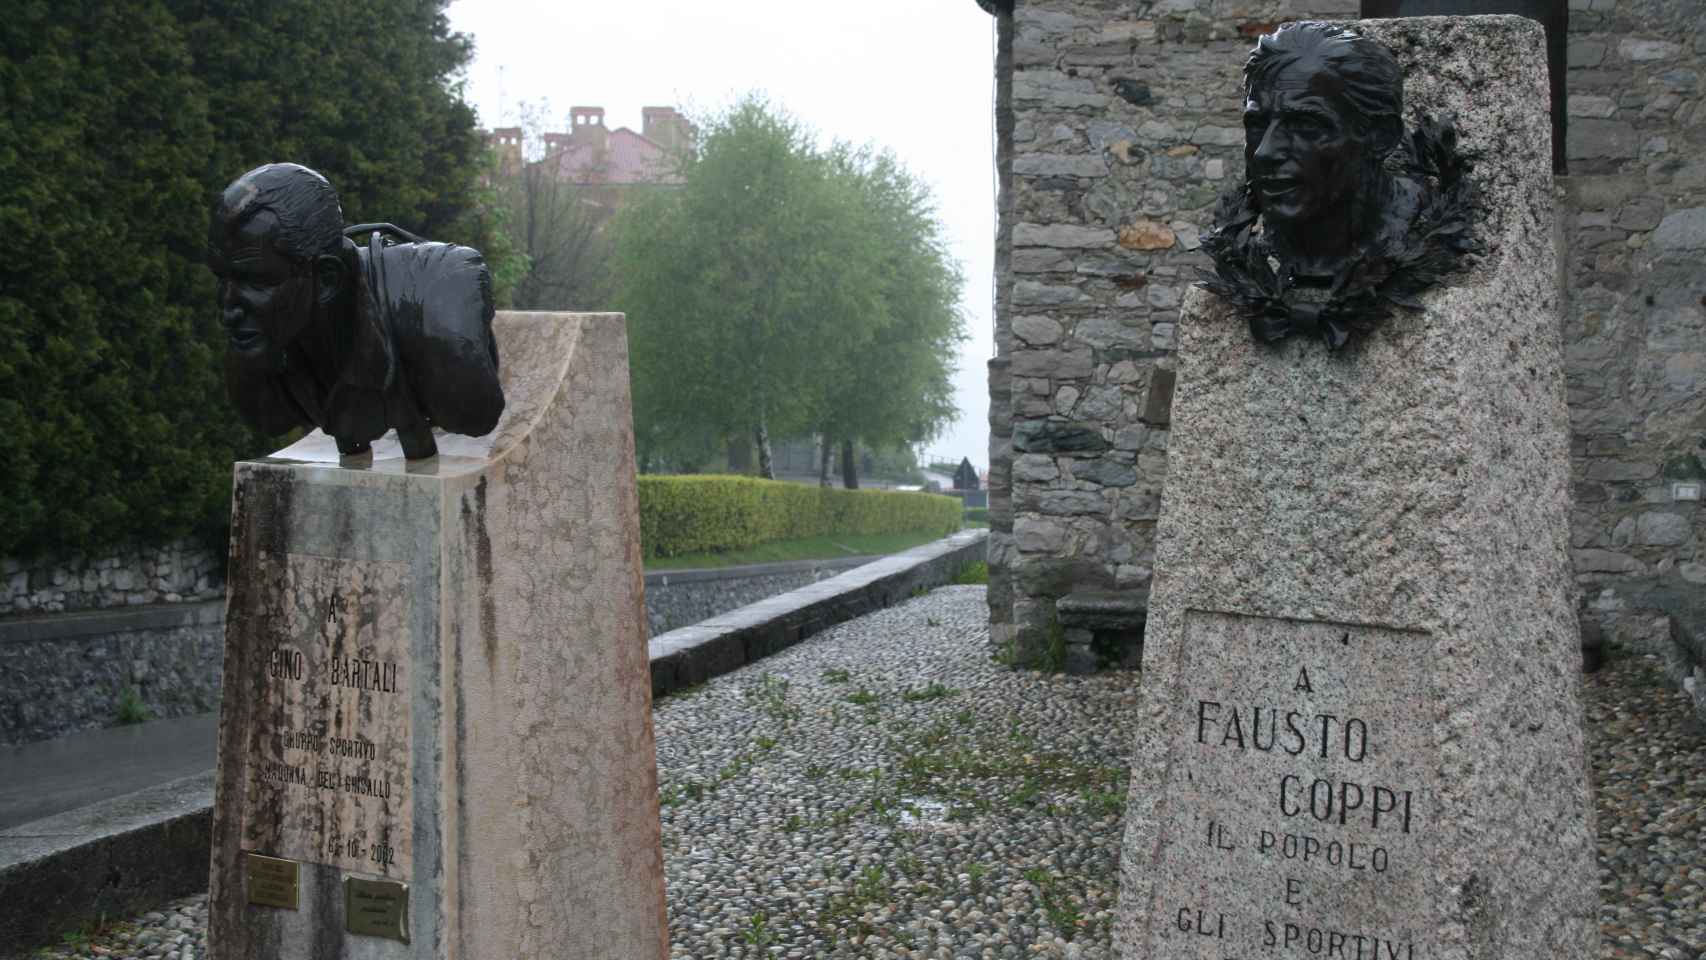 Los bustos de Gino Bartali y Fausto Coppi presiden la entrada a la iglesia.